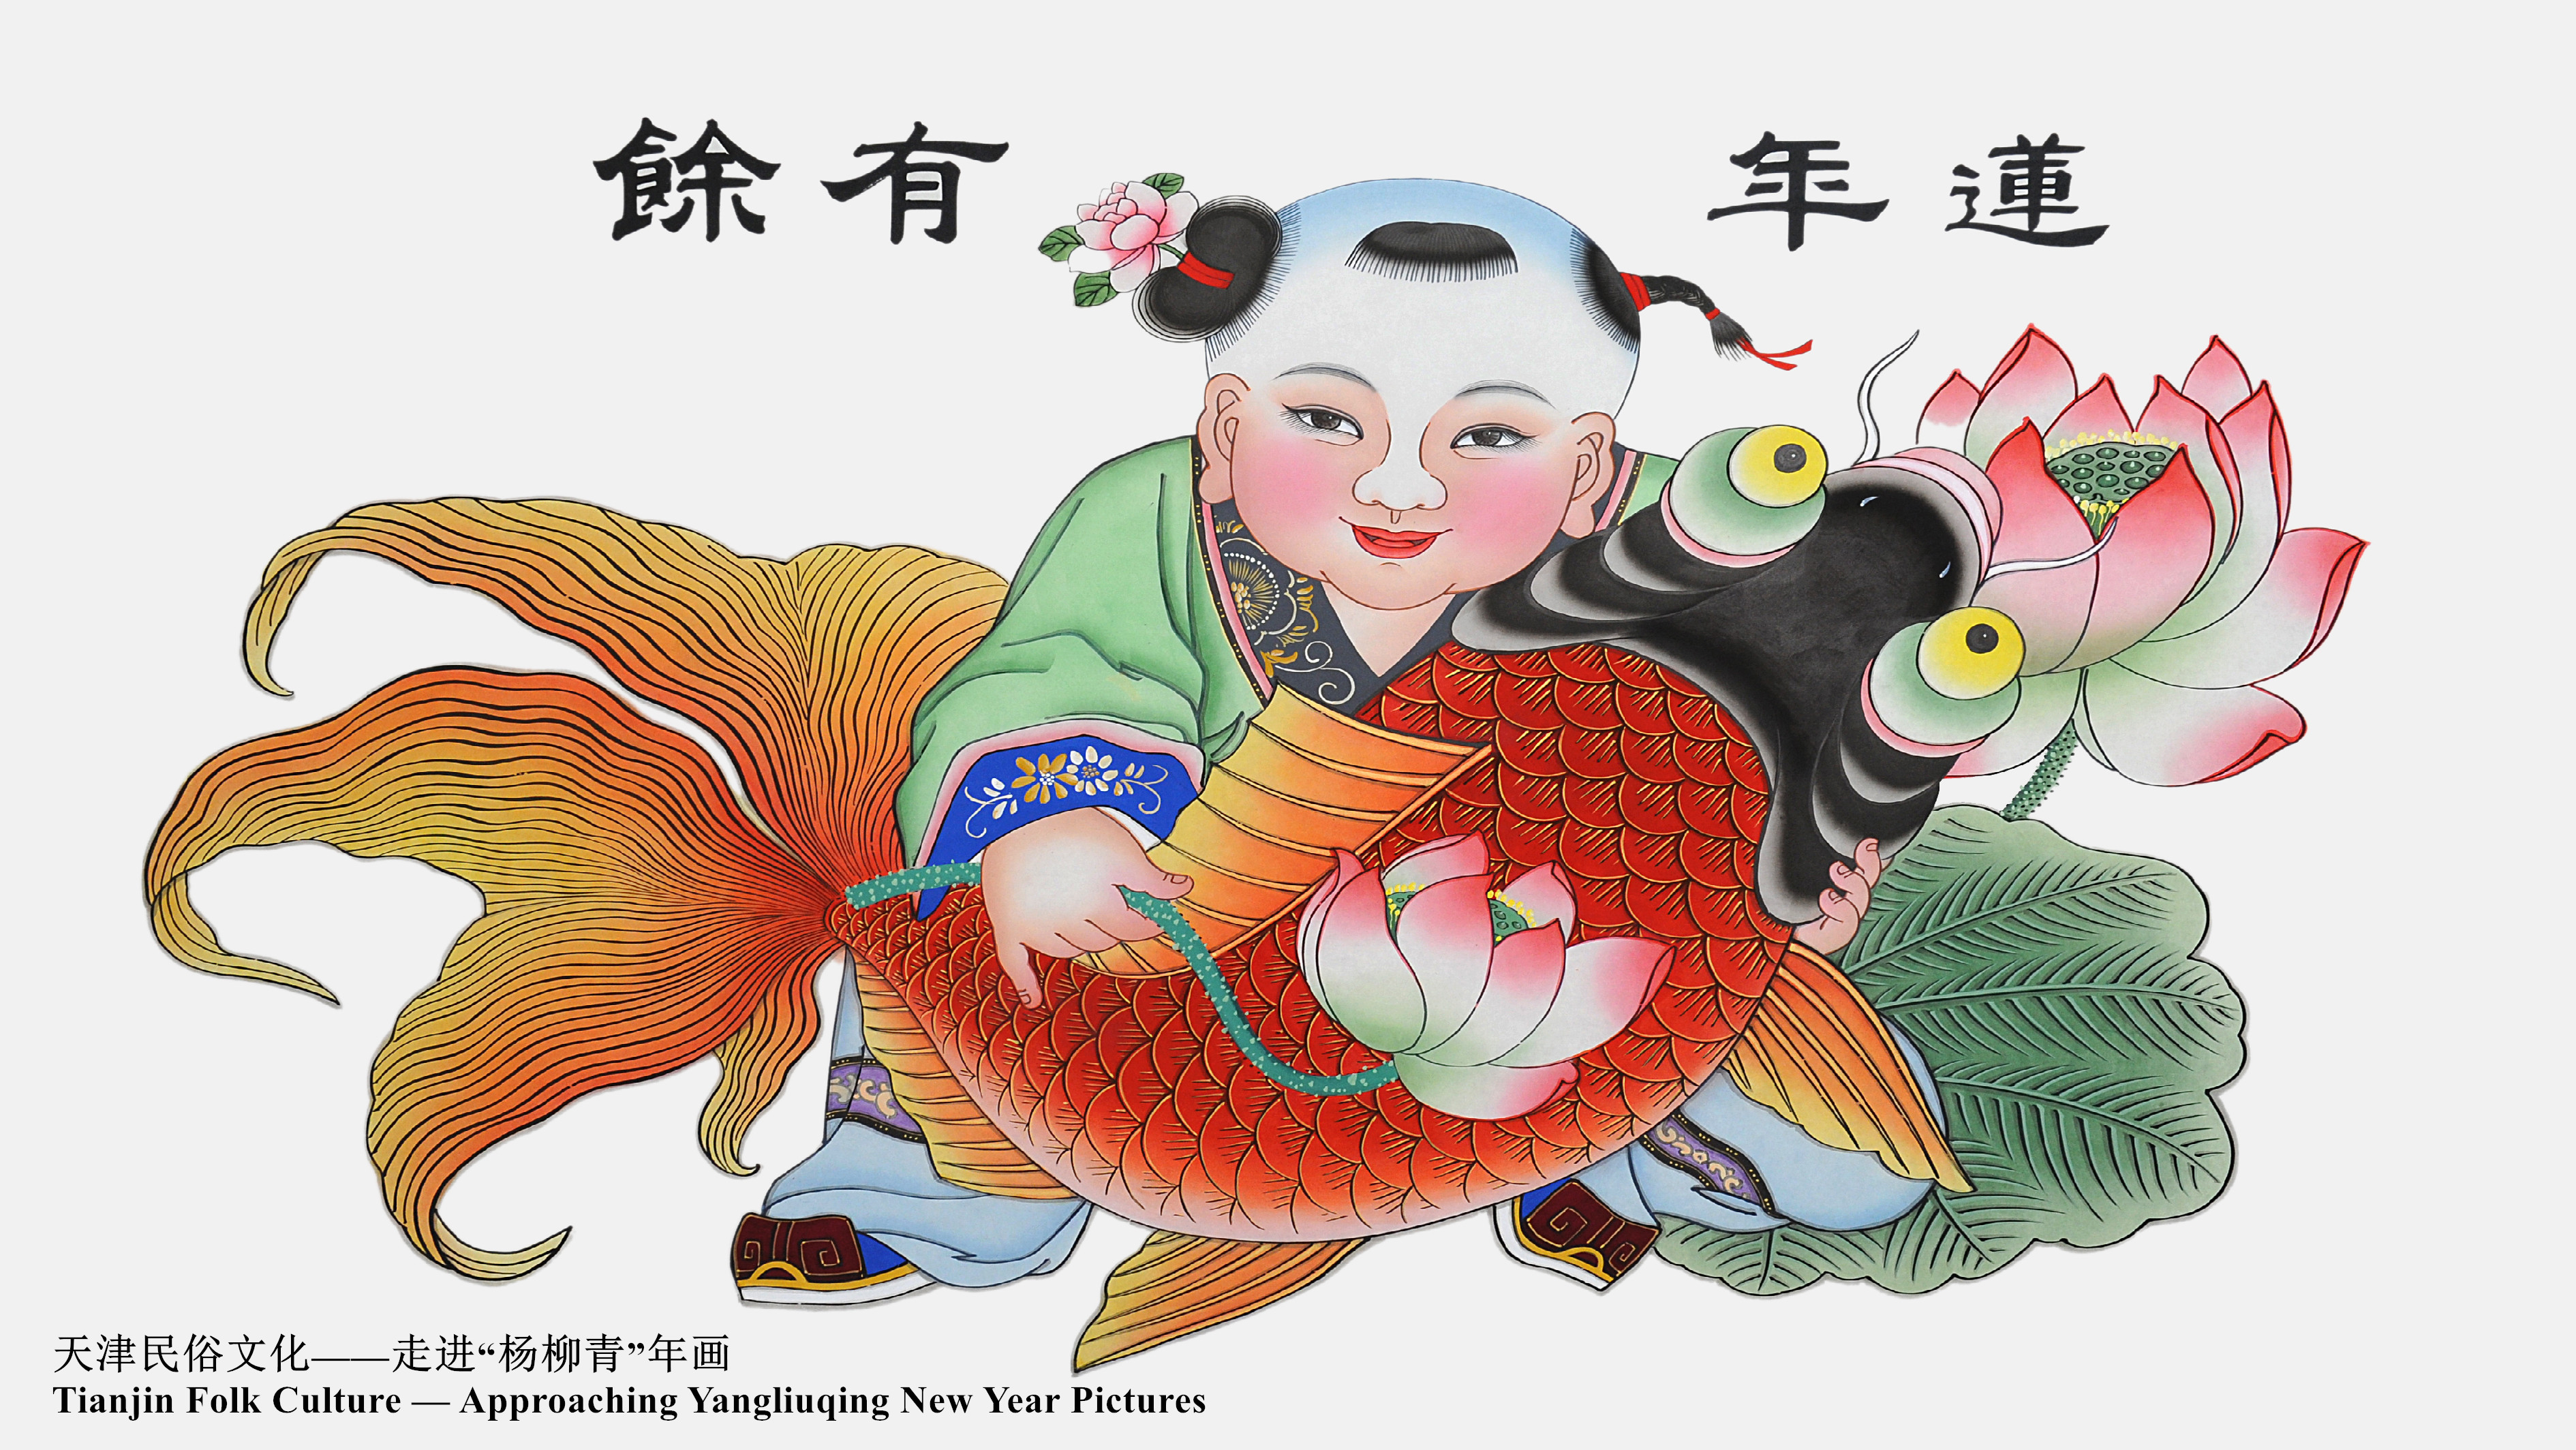 Cultura folclórica de Tianjin: acercándonos a las Pinturas del Año Nuevo de Yangliuqing